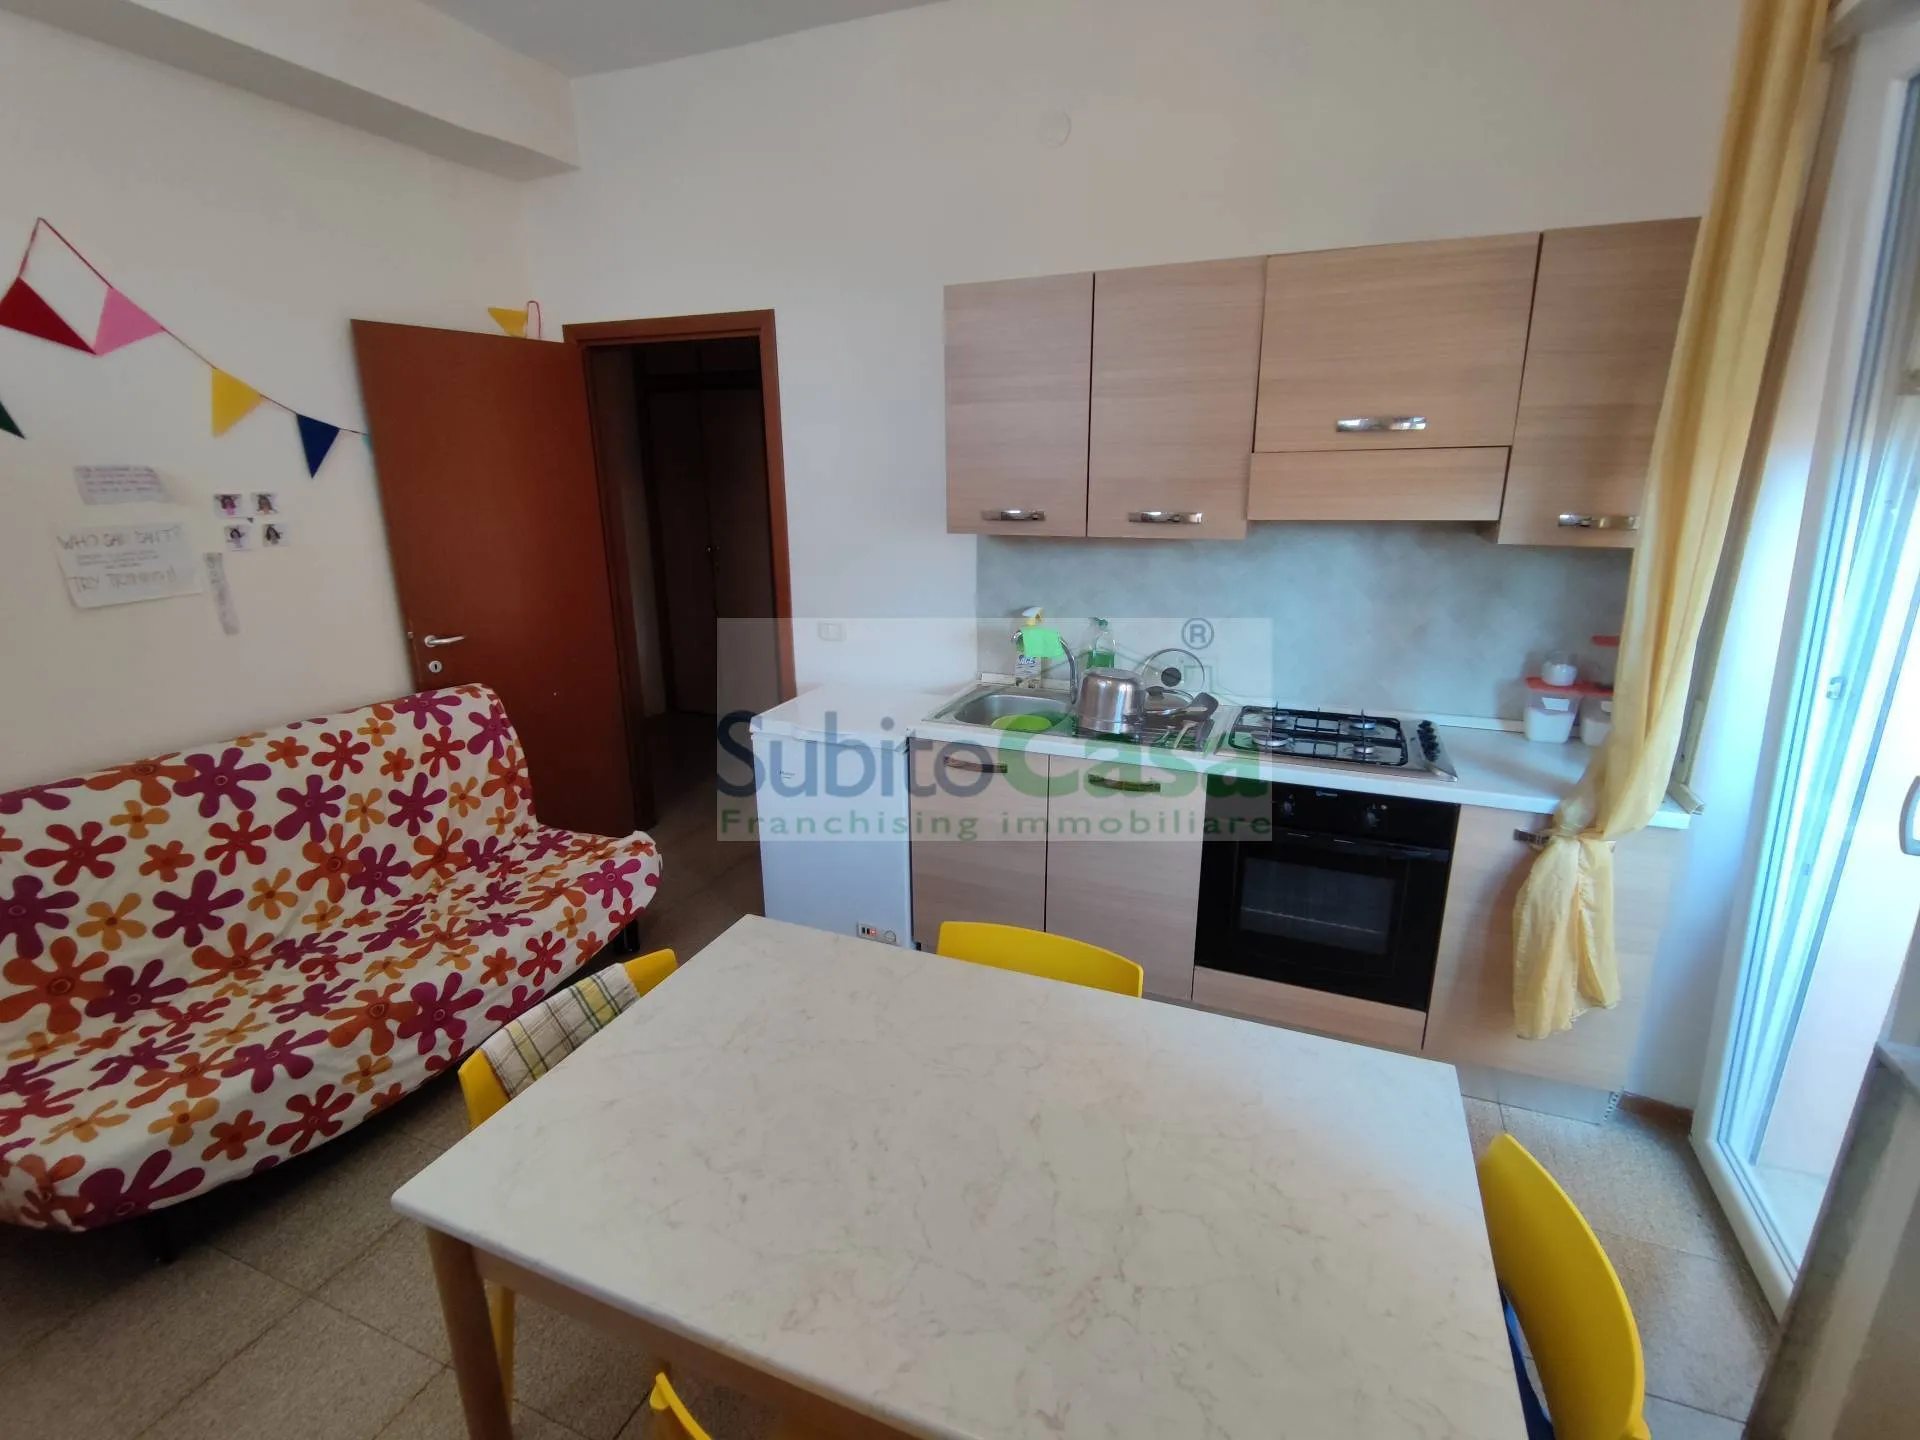 Immagine per Appartamento in affitto a Chieti Piazza Marconi